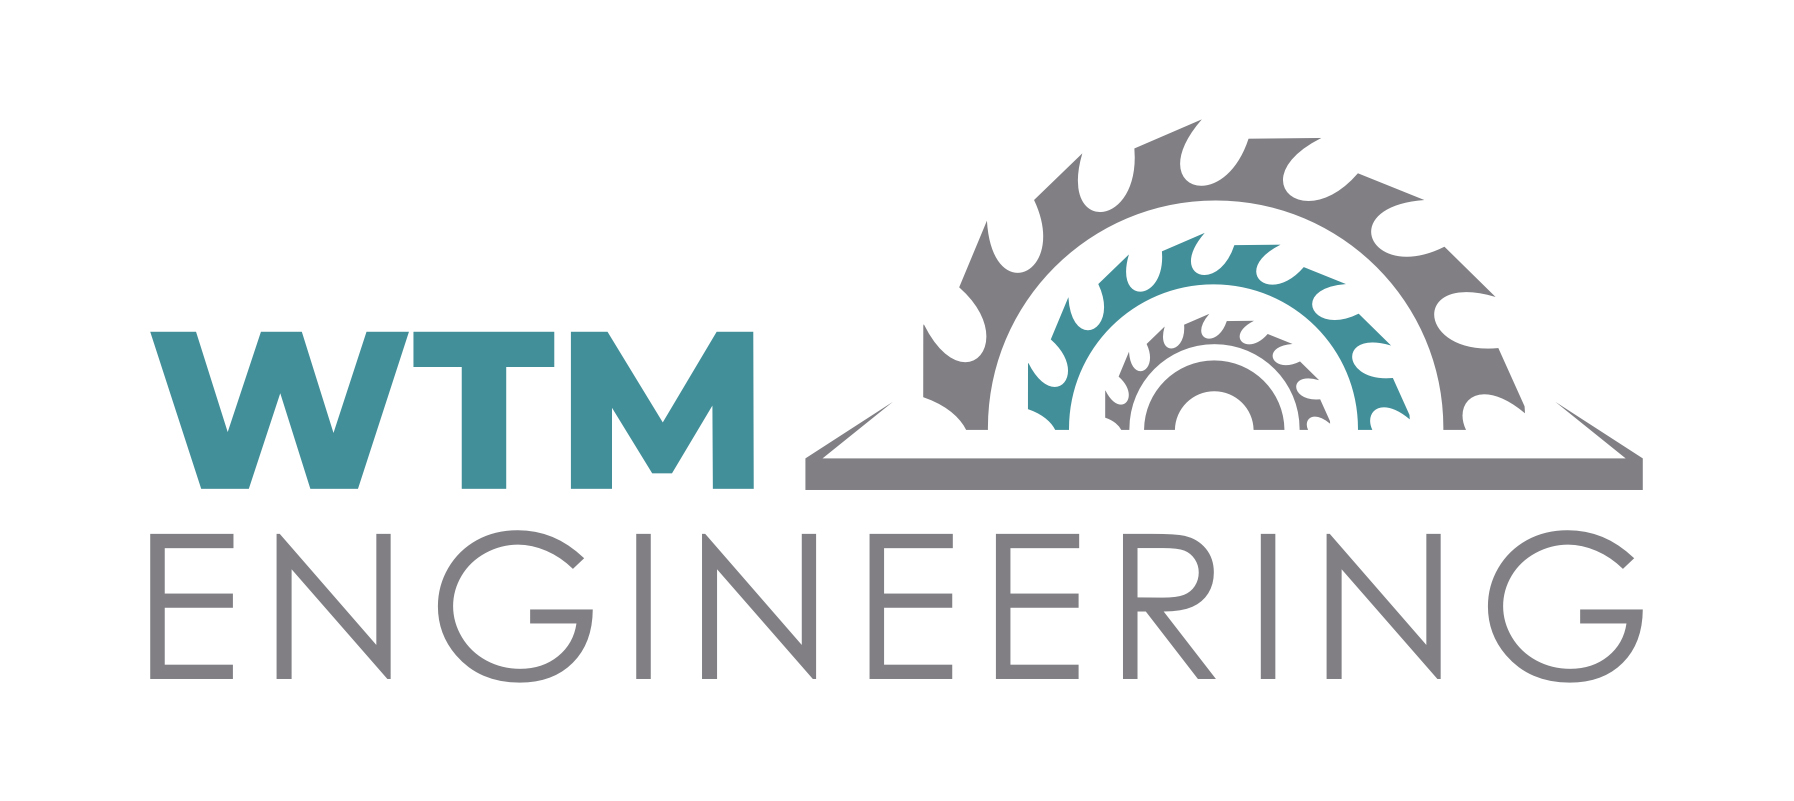 WTM Engineering